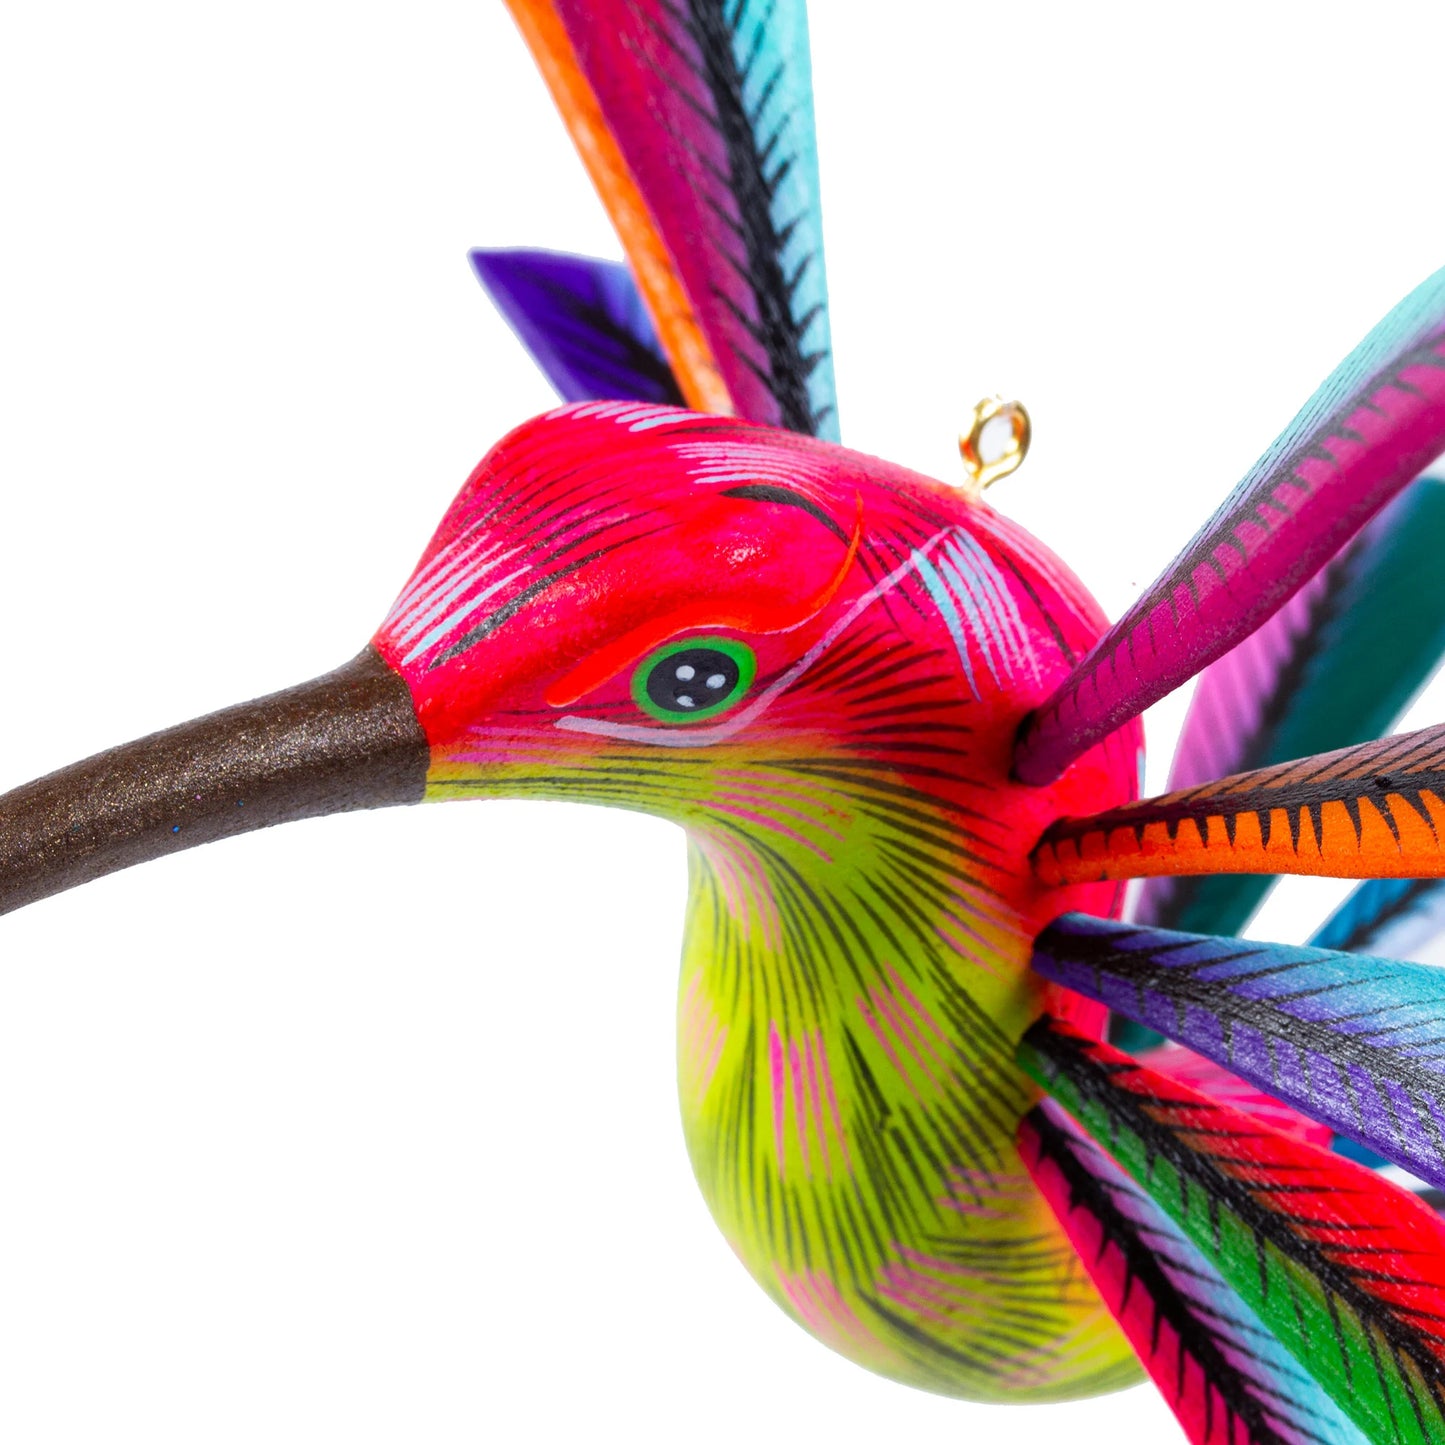 Bold Hummingbird - alebrije hummingbird